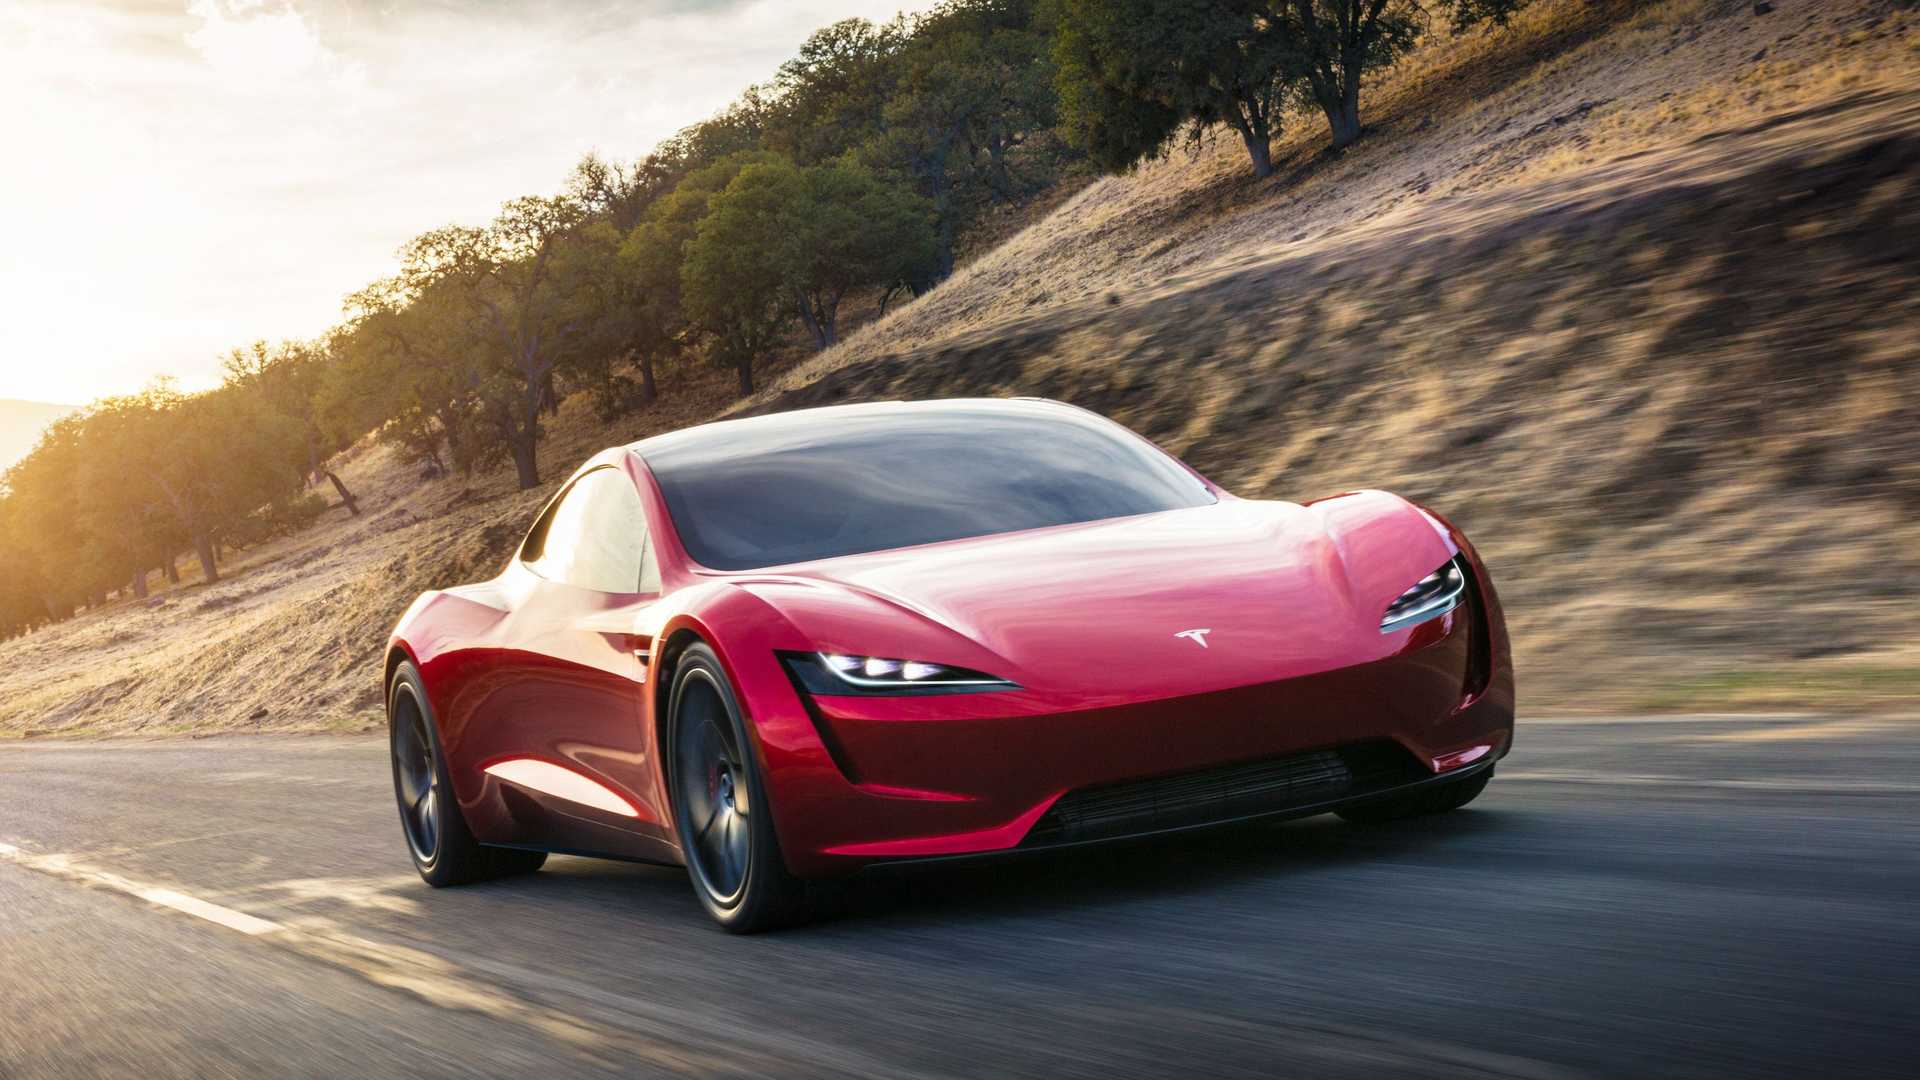 نمای جلو خودروی الکتریکی تسلا رودستر / Tesla Roadster قرمز رنگ